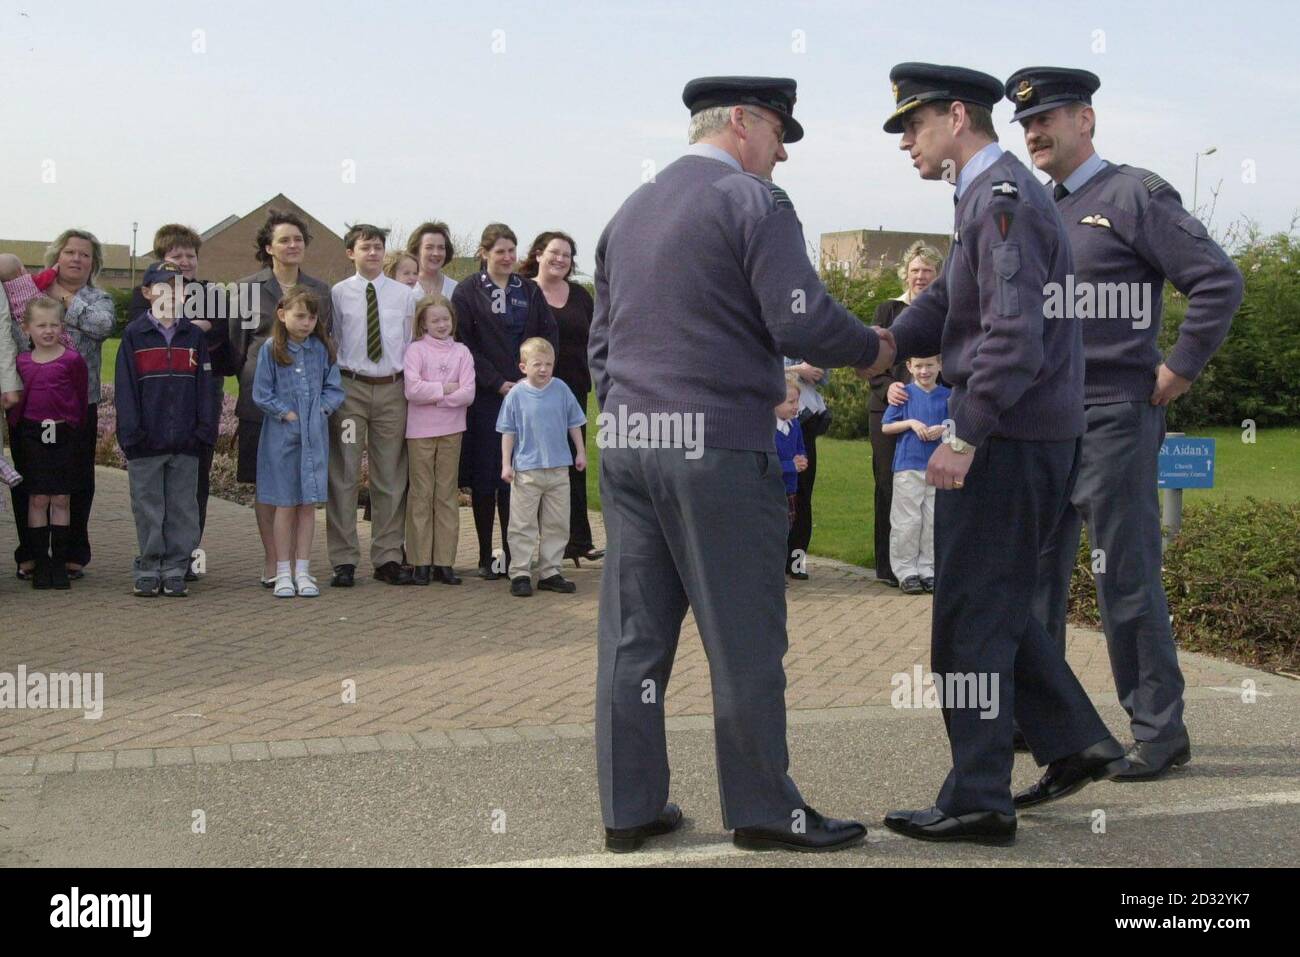 Le Commodore aérien honoraire de la RAF Lossiemouth le Prince Andrew rencontre des familles de membres de l'équipage qui sont impliqués dans le conflit dans le Golfe. * il est photographié lors de la rencontre d'arrivée Bryan McNeil, chef de l'escadron du rév. Padre (à gauche), avec le commandant de la station intérimaire, David Bye (à droite). Le Prince Andrew a aujourd'hui rendu visite à des familles dont les proches servent dans le golfe. Le duc d'York s'est rendu à RAF Lossiemouth à Moray, en Écosse, où il a rencontré des épouses, des partenaires et des enfants de personnel stationnés à la base. Banque D'Images